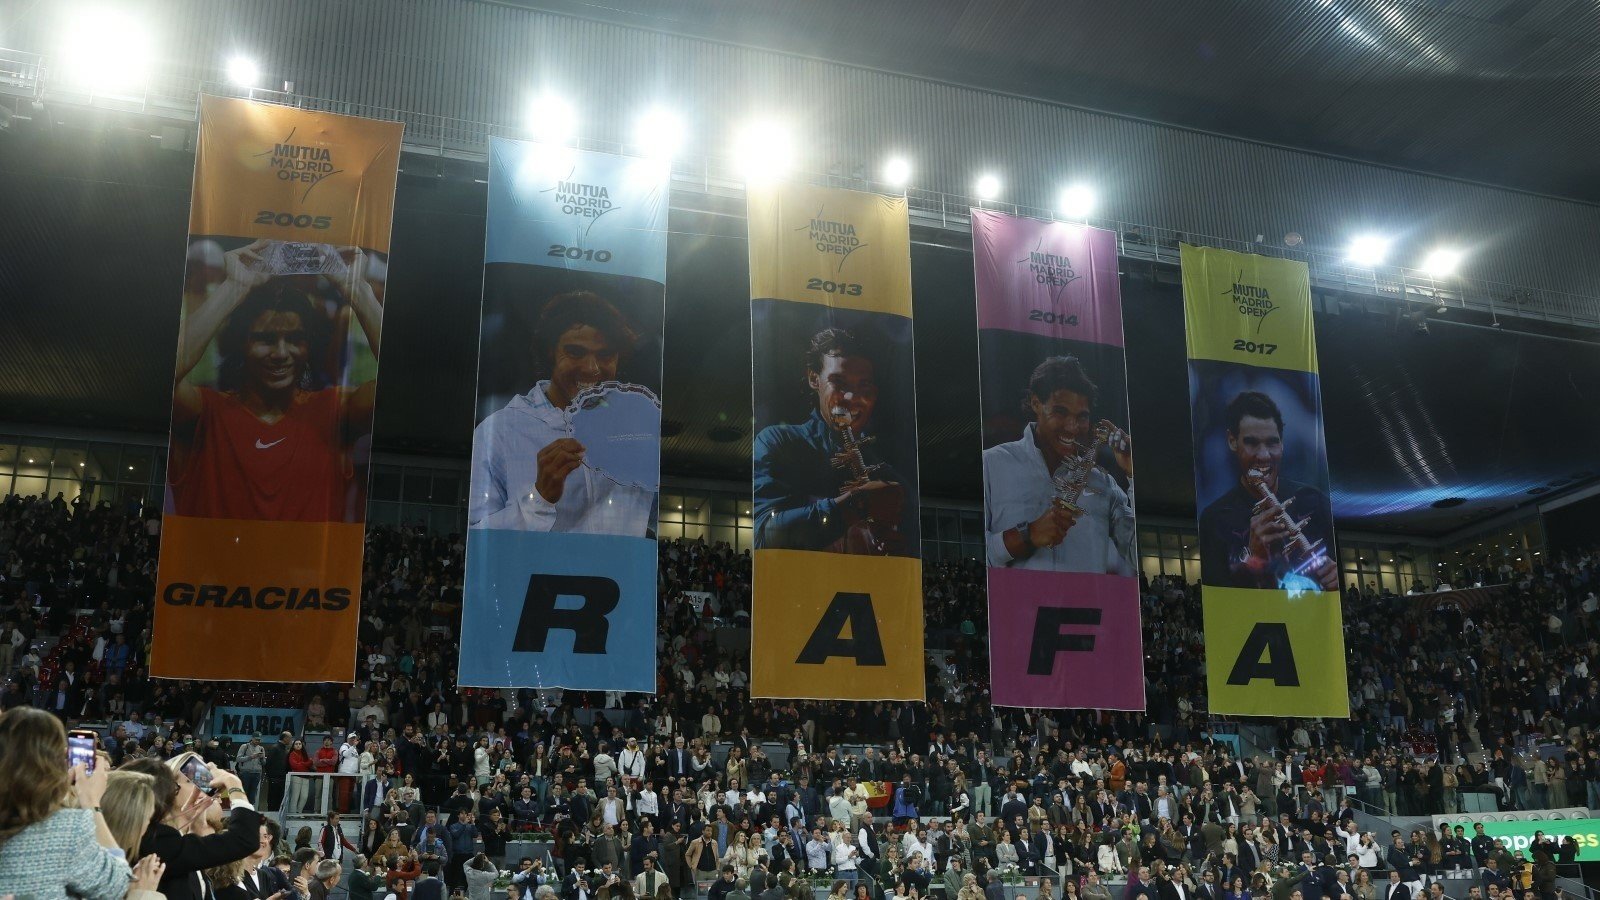 Rafał Nadal zakończył swoją karierę w Madrycie. Emocjonalne pożegnanie z hiszpańskim tenisistą.